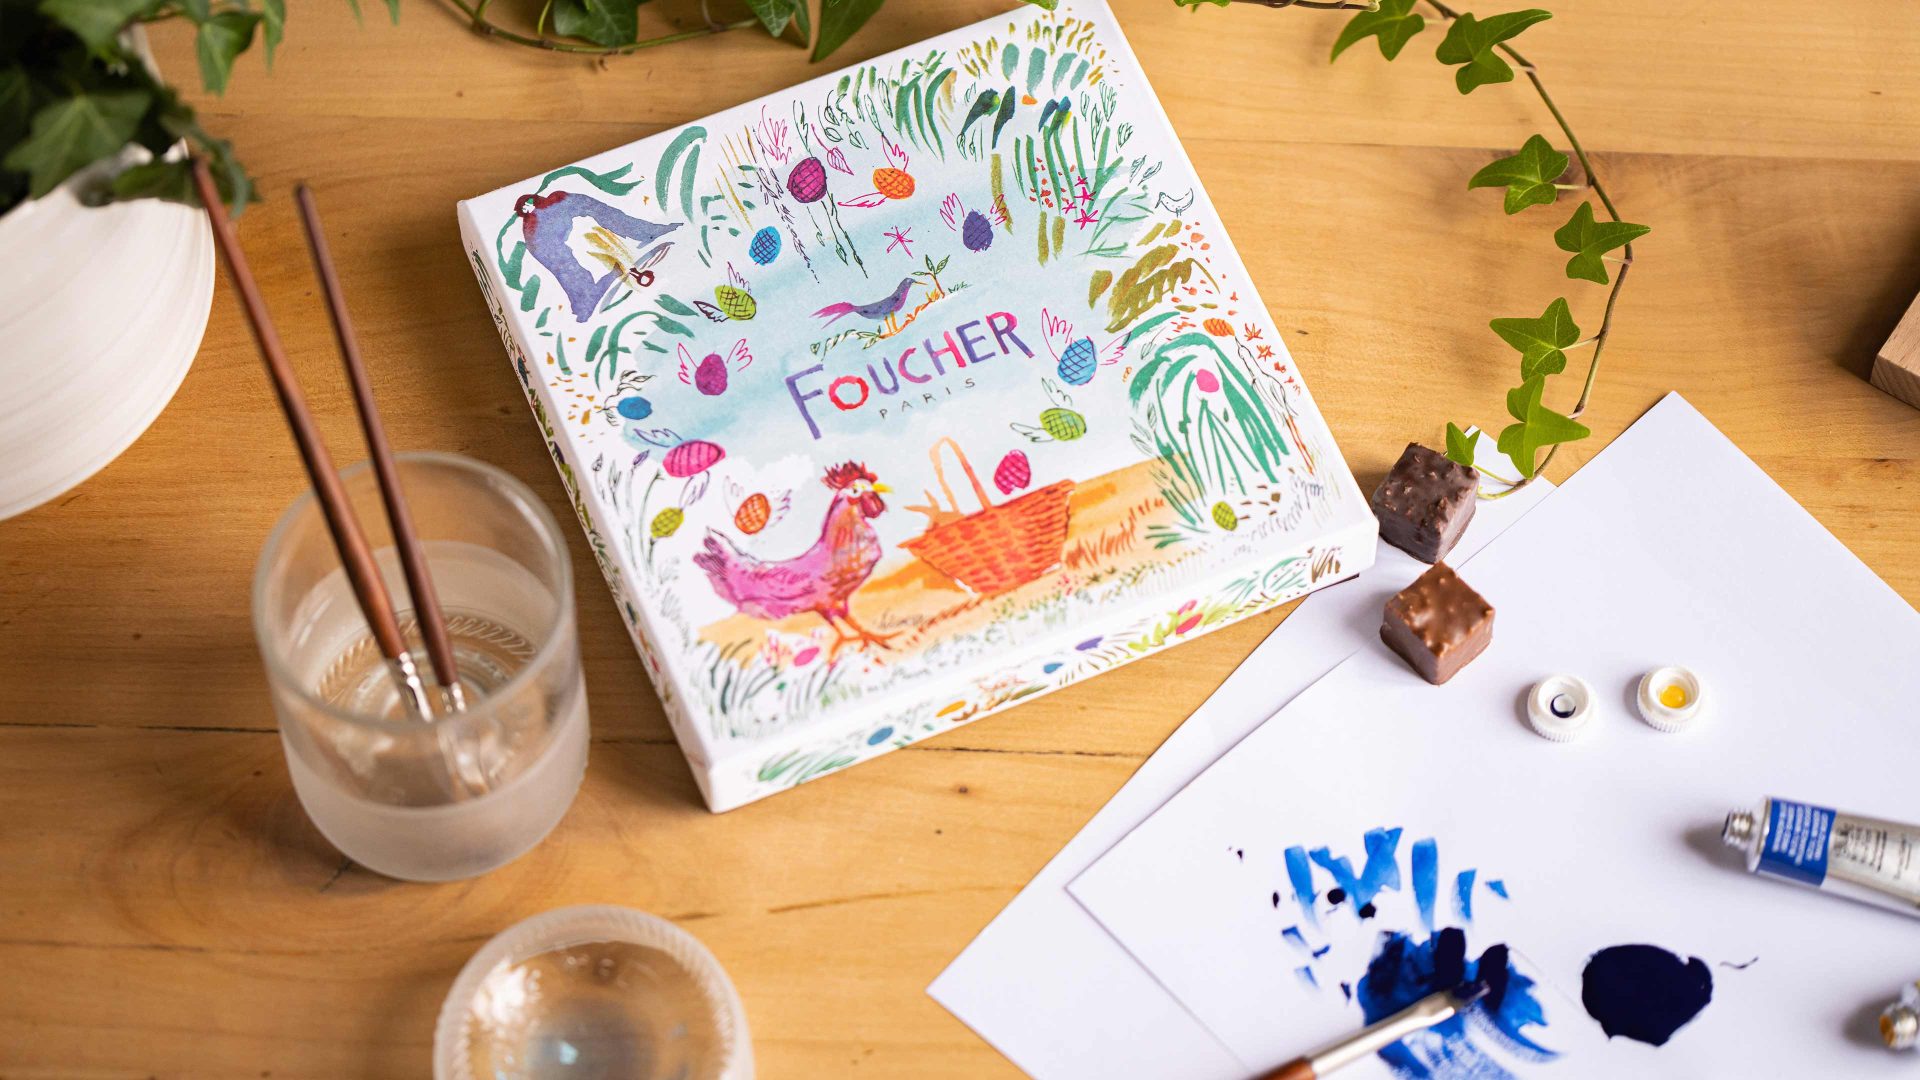 Une boîte Foucher entourée d'une plante, de pinceaux à tremper, de deux chocolats, ainsi que de feuilles blanches avec des traces d'aquarelles ainsi qu'un tube de peinture.